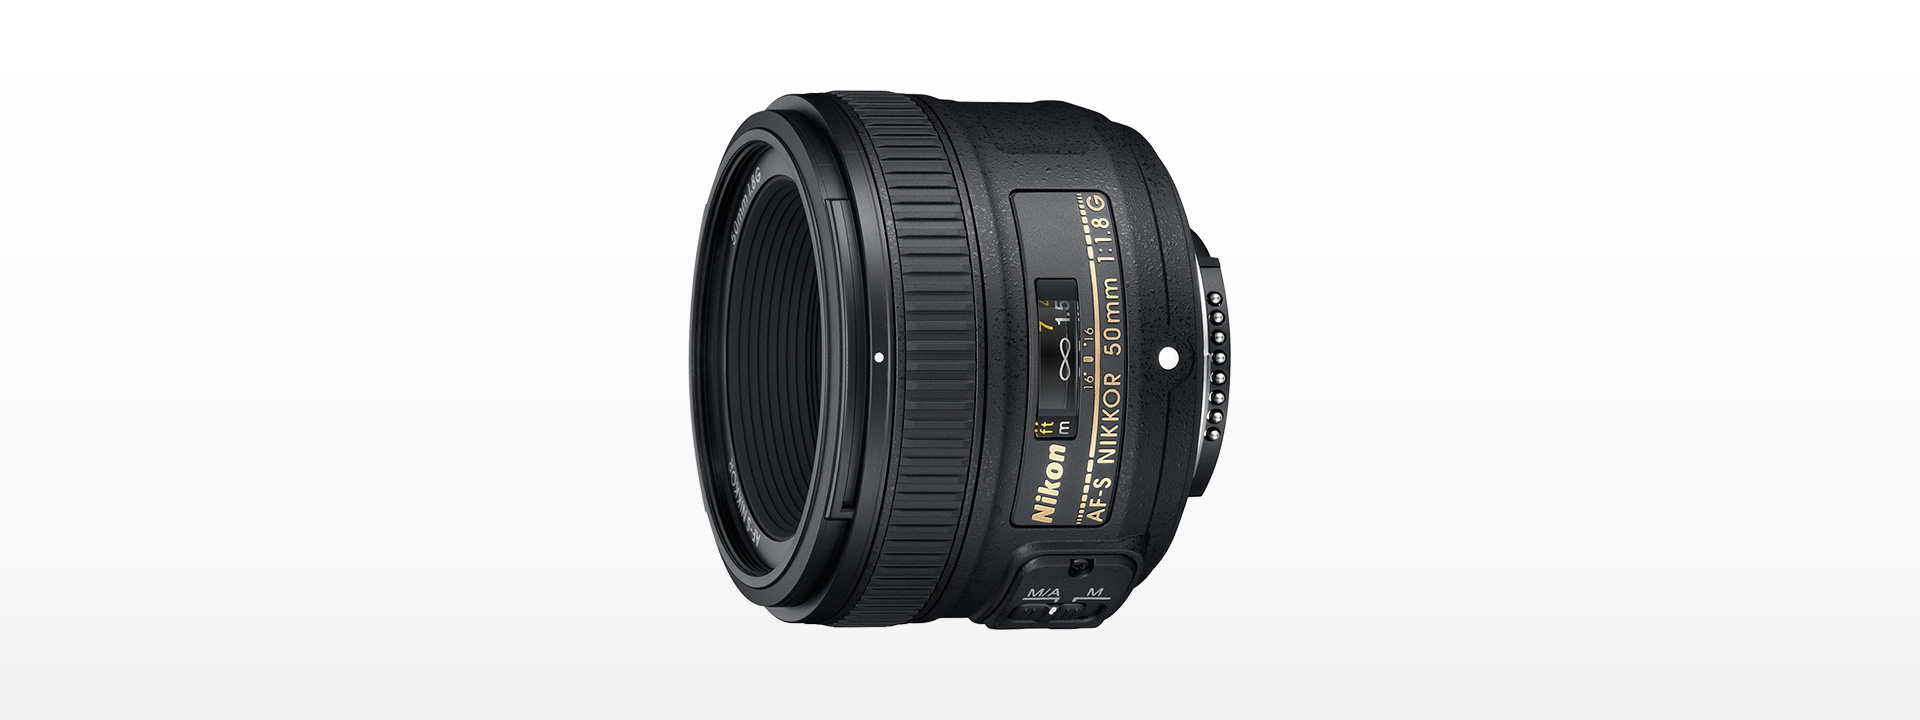 カメラ レンズ(単焦点) AF-S NIKKOR 50mm f/1.8G - 概要 | NIKKORレンズ | ニコンイメージング